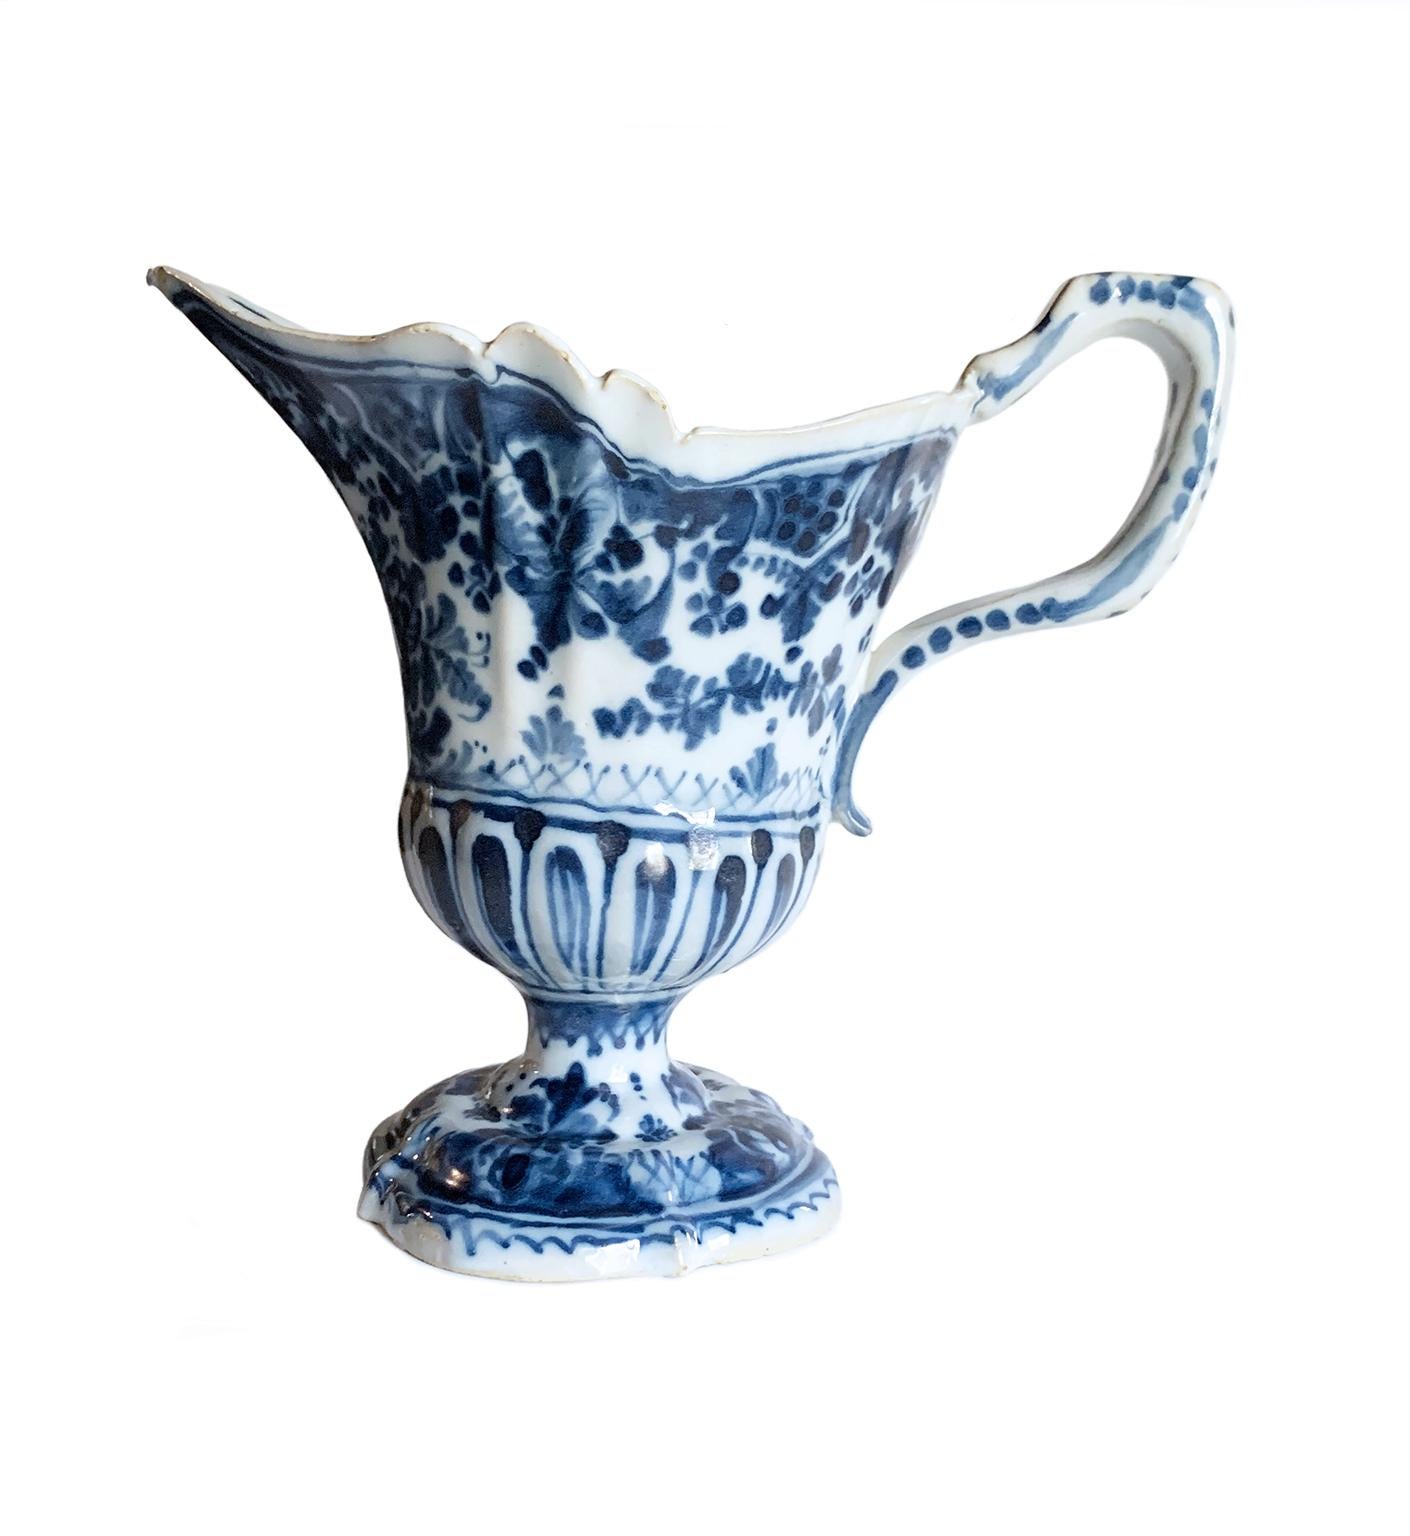 Maiolica-Krug
Antonio Maria Coppellotti Herstellen
Lodi, um 1735 
Majolika mit kobaltblauem Monochromdekor
Es misst 7,36 in Höhe x 8,07 x 4,52 (h 18,7 cm x 20,5 x 11,5)
Gewicht:  0.859 lb (390 g)

Erhaltungszustand: intakt, abgesehen von einem